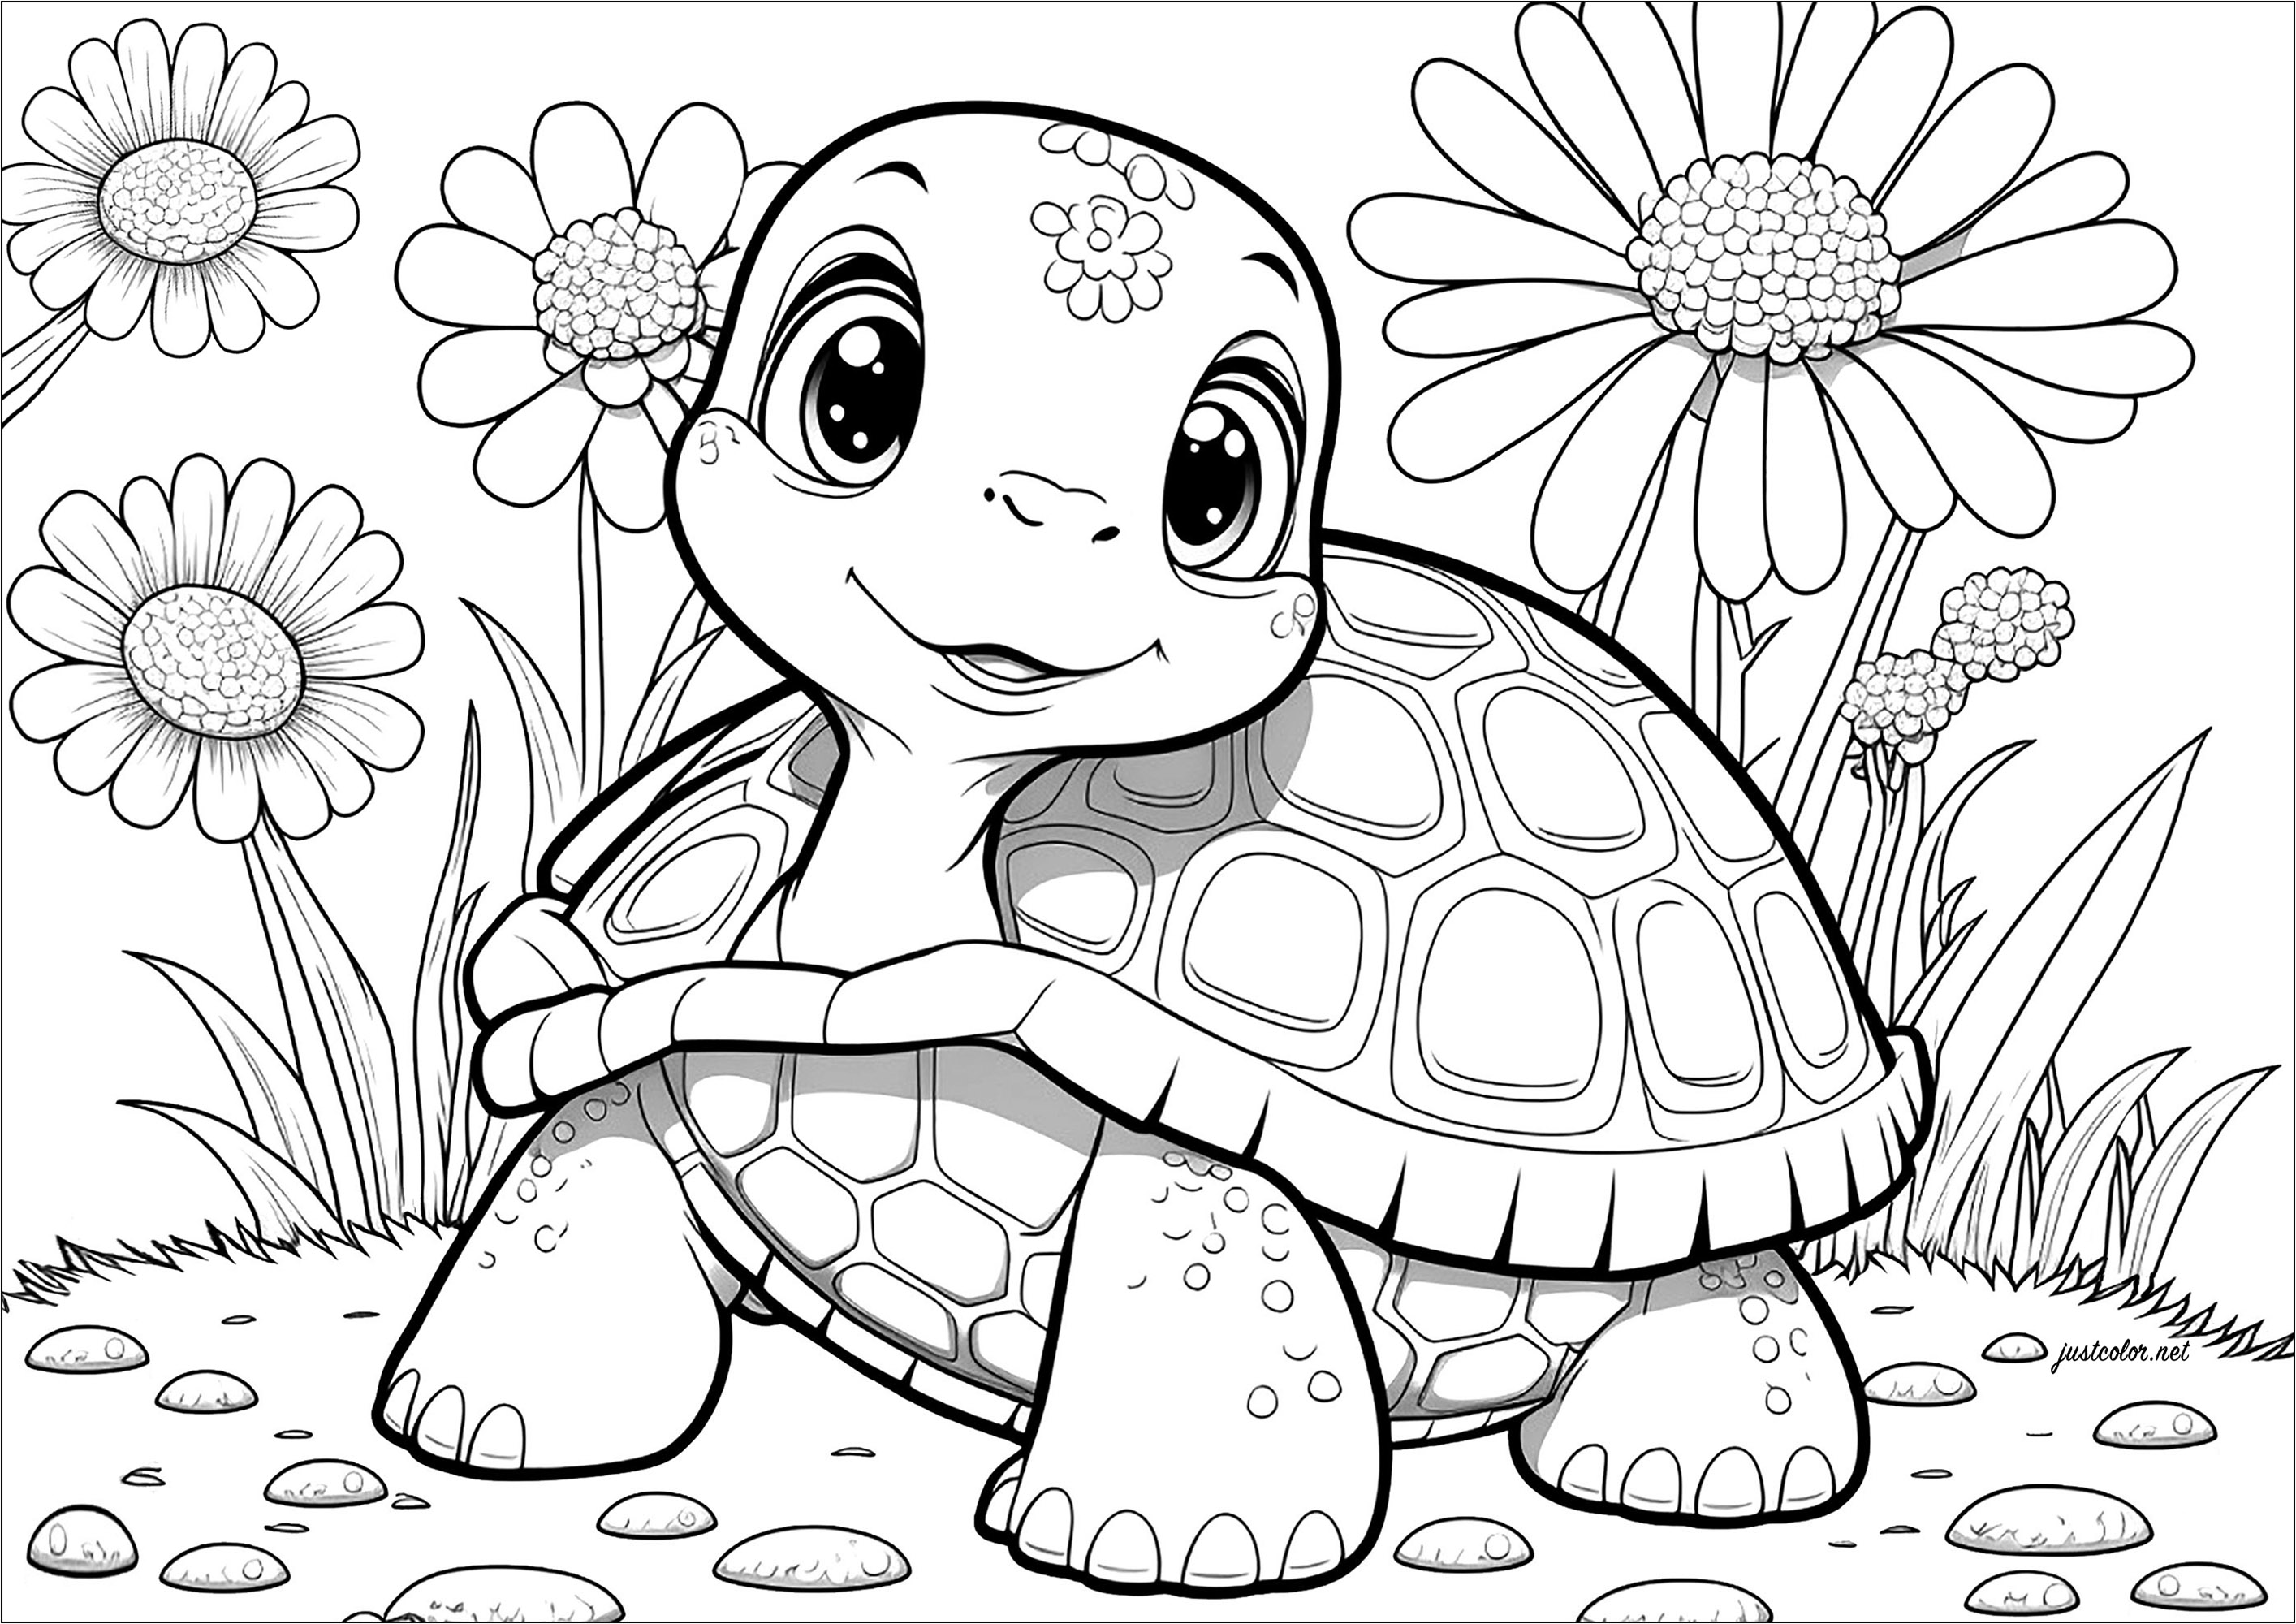 Uma tartaruga muito infantil para colorir, mas com muitos pormenores!. Acompanhe esta tartaruga terrestre nas suas lentas mas seguras aventuras nesta divertida página para colorir.